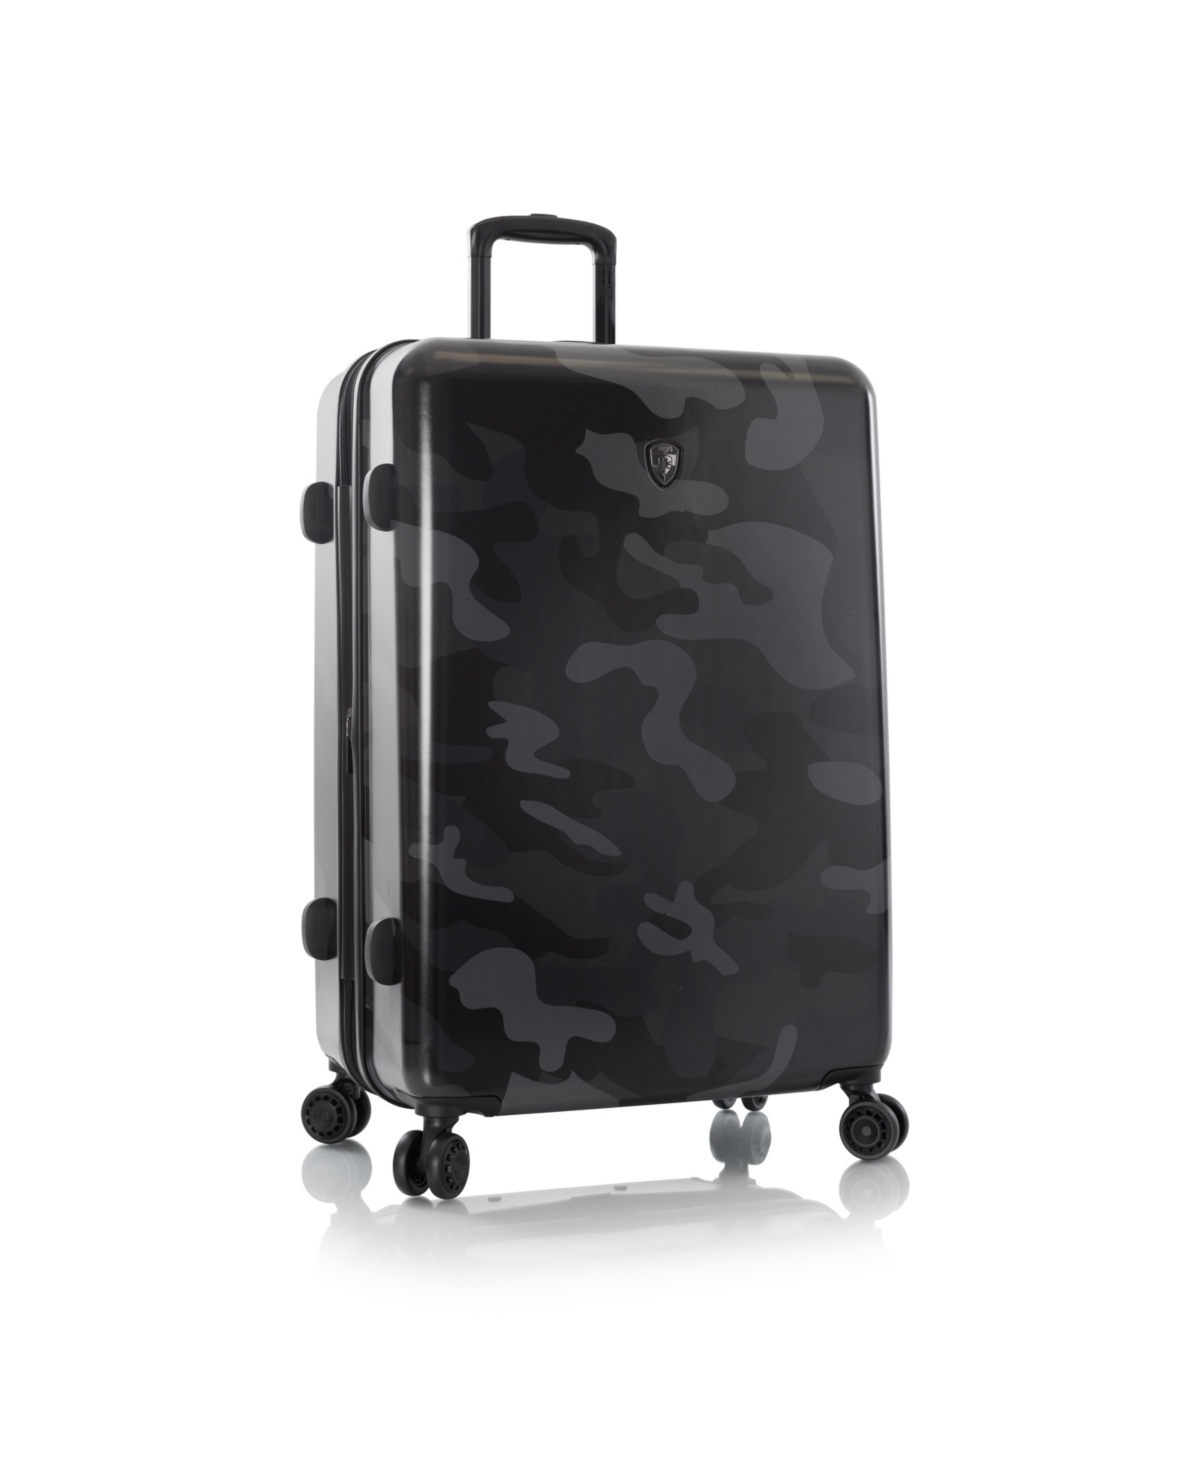 Fashion 30" Hardside Spinner Luggage - White Camo